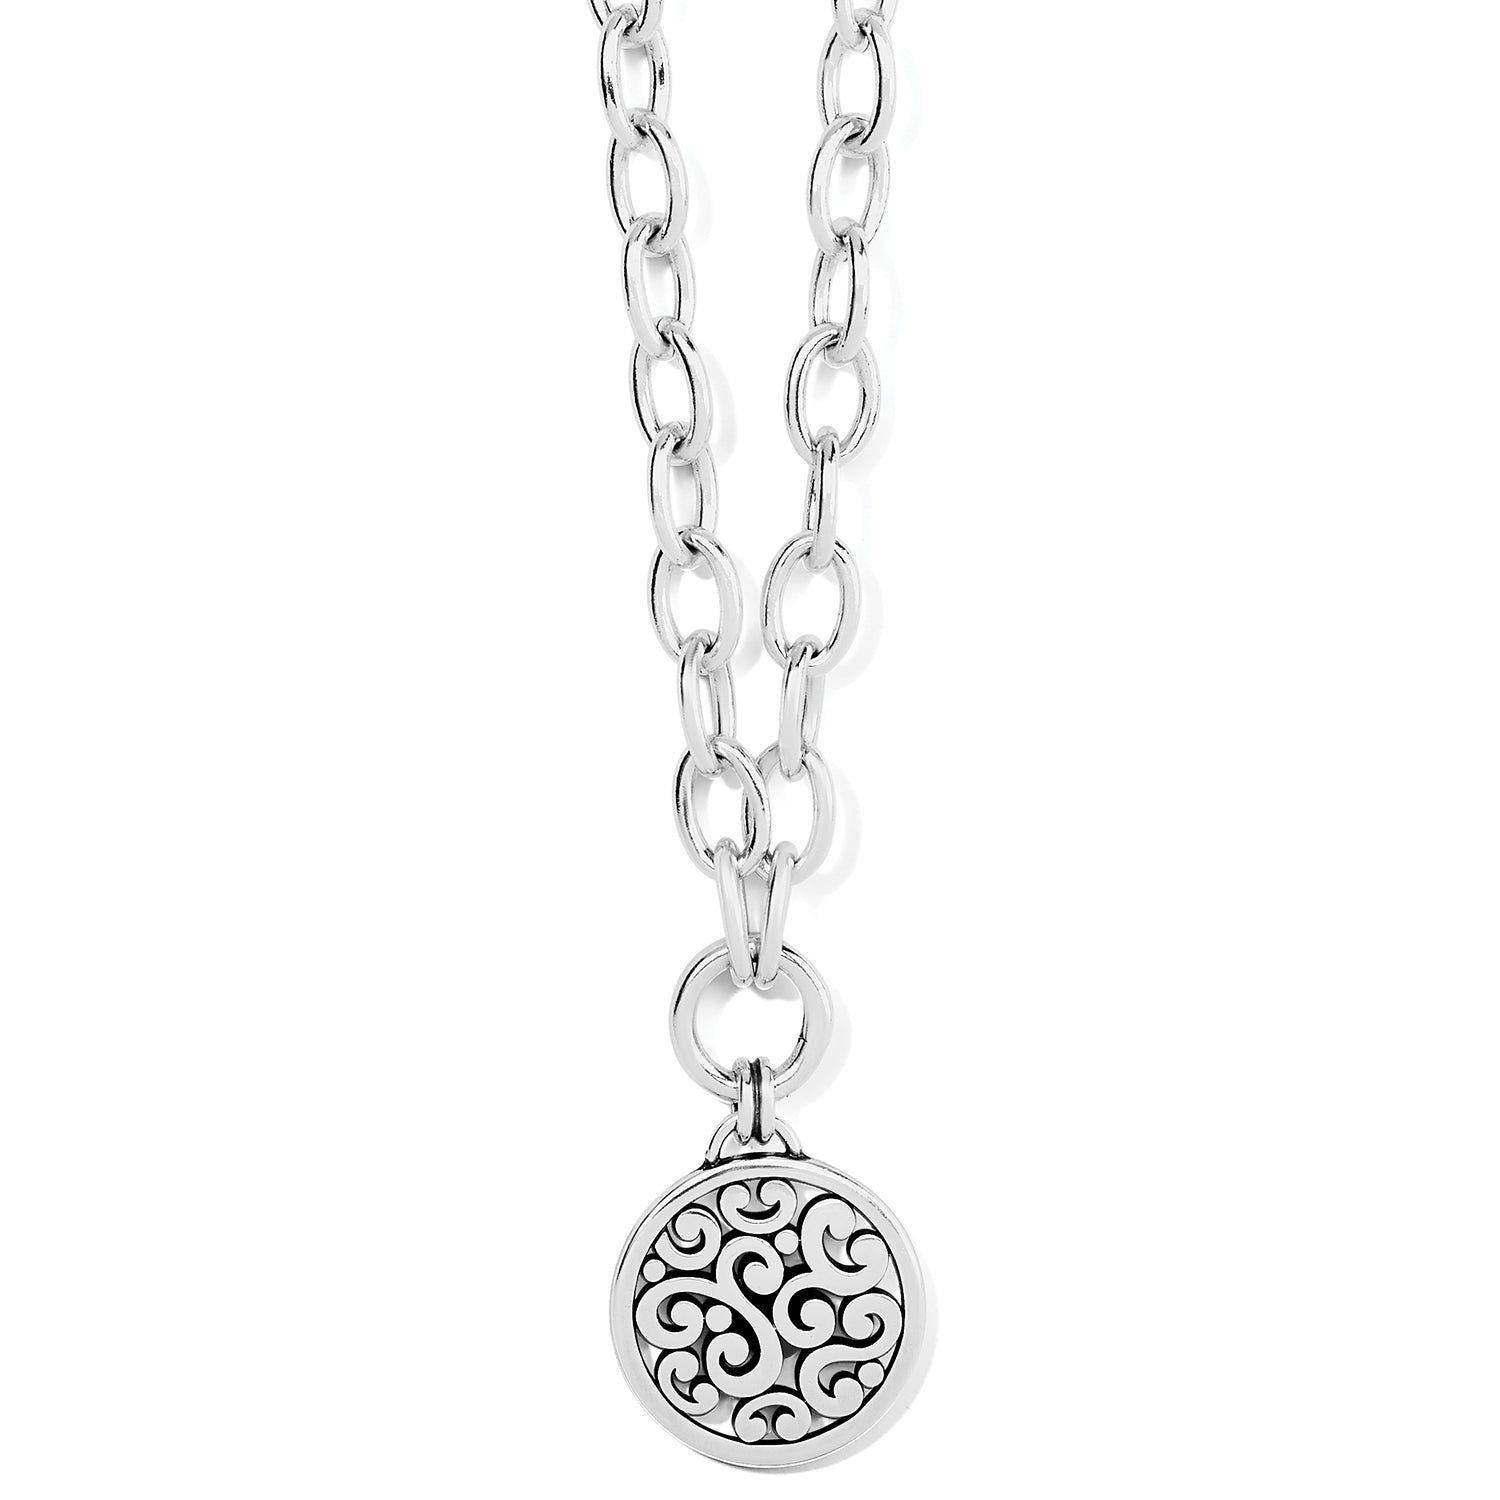 Contempo Medallion Charm Necklace pendant 